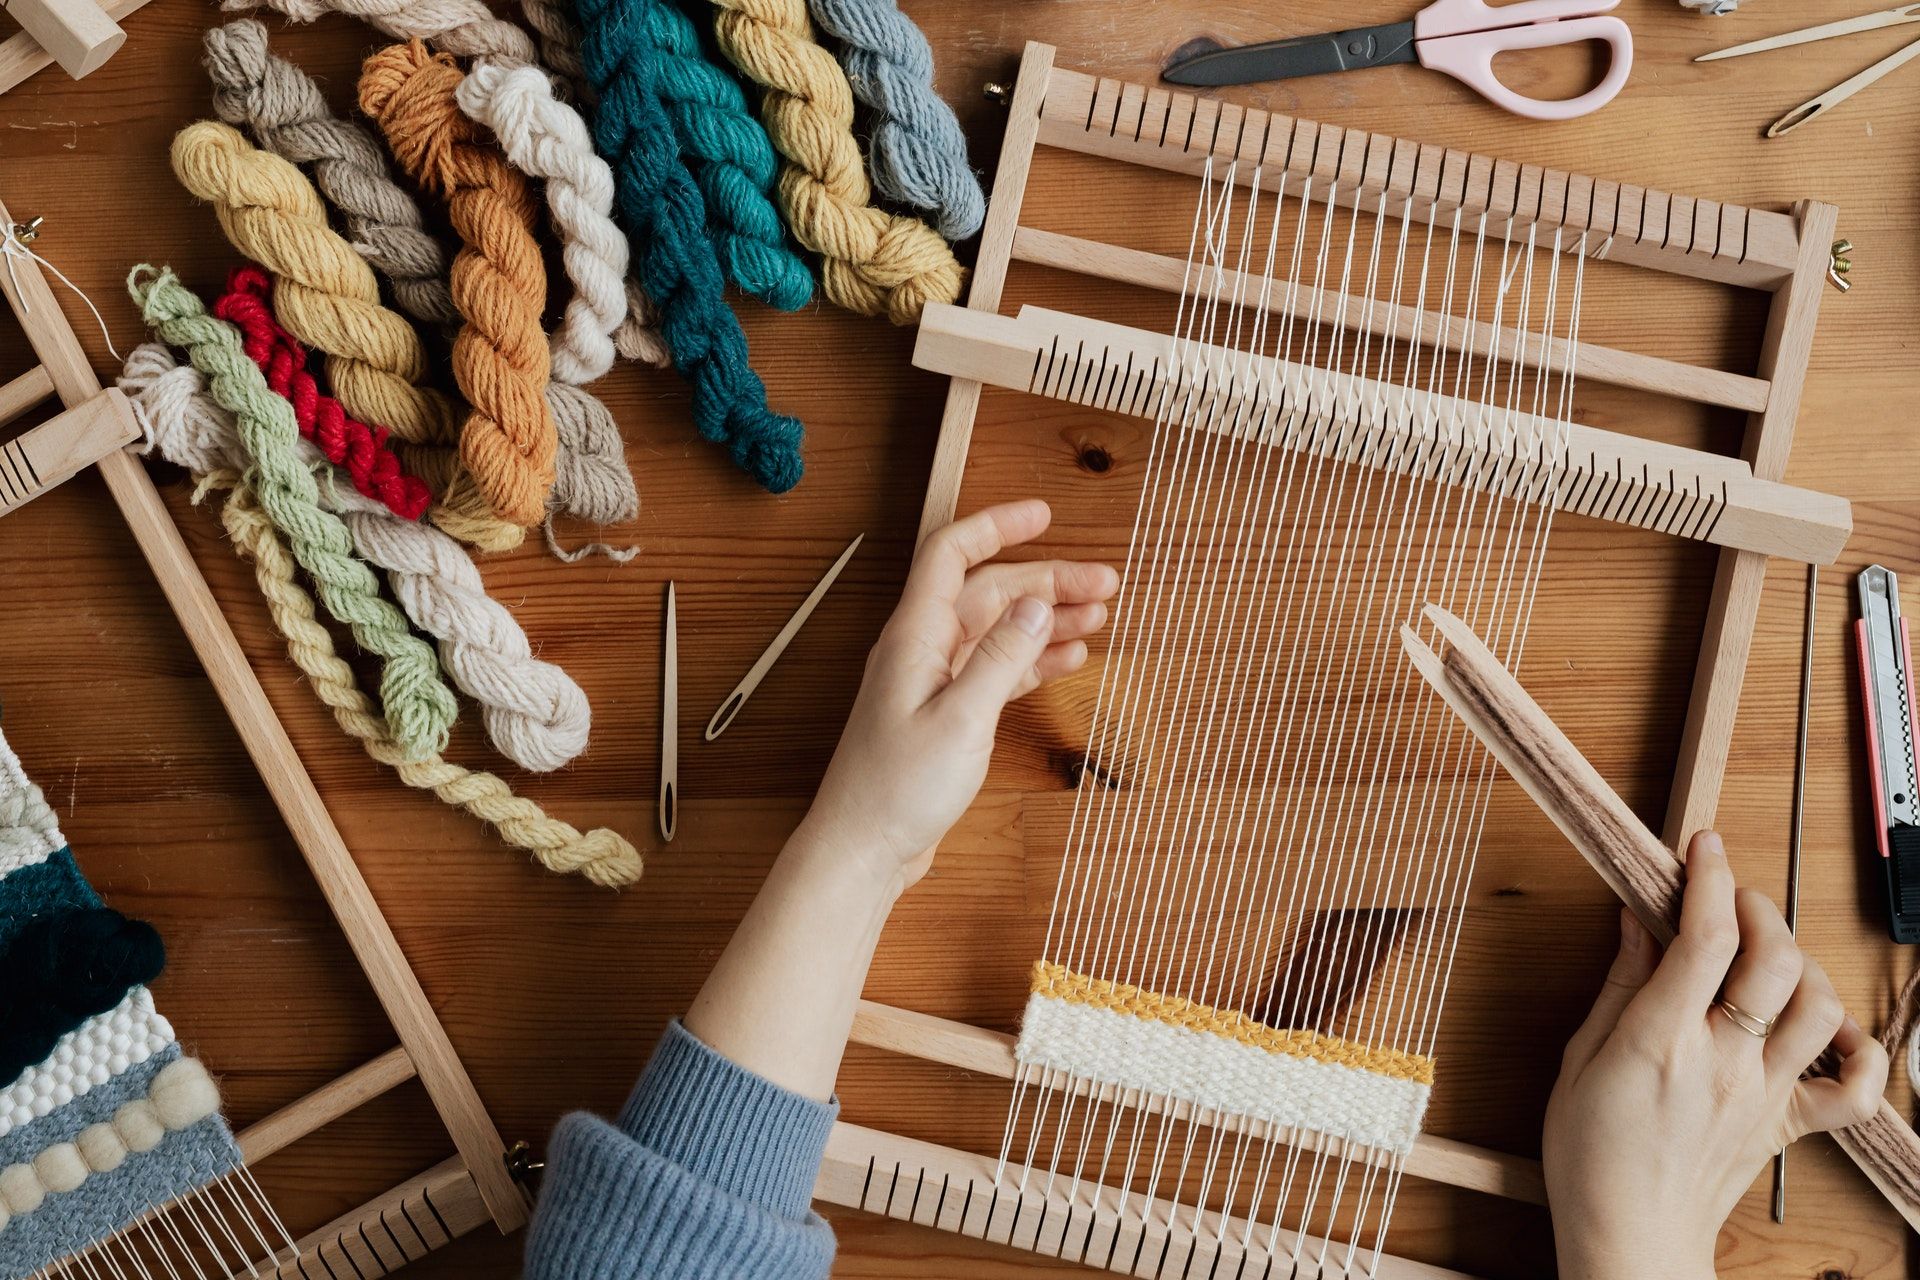                               How to Make a Cardboard Loom                             
                              